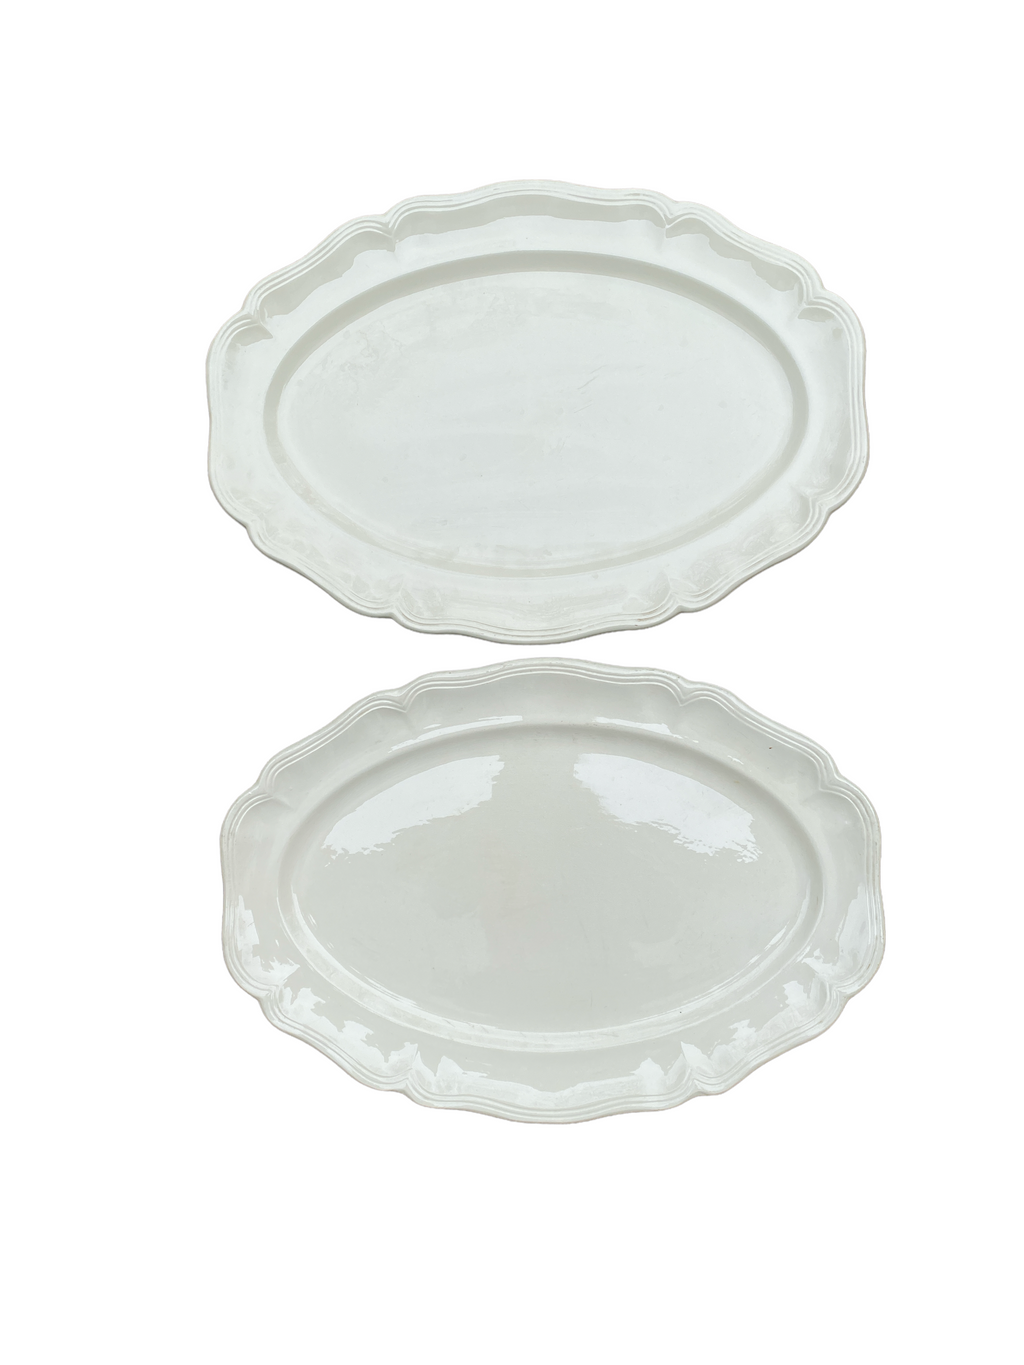 Pair French Creamware Platters